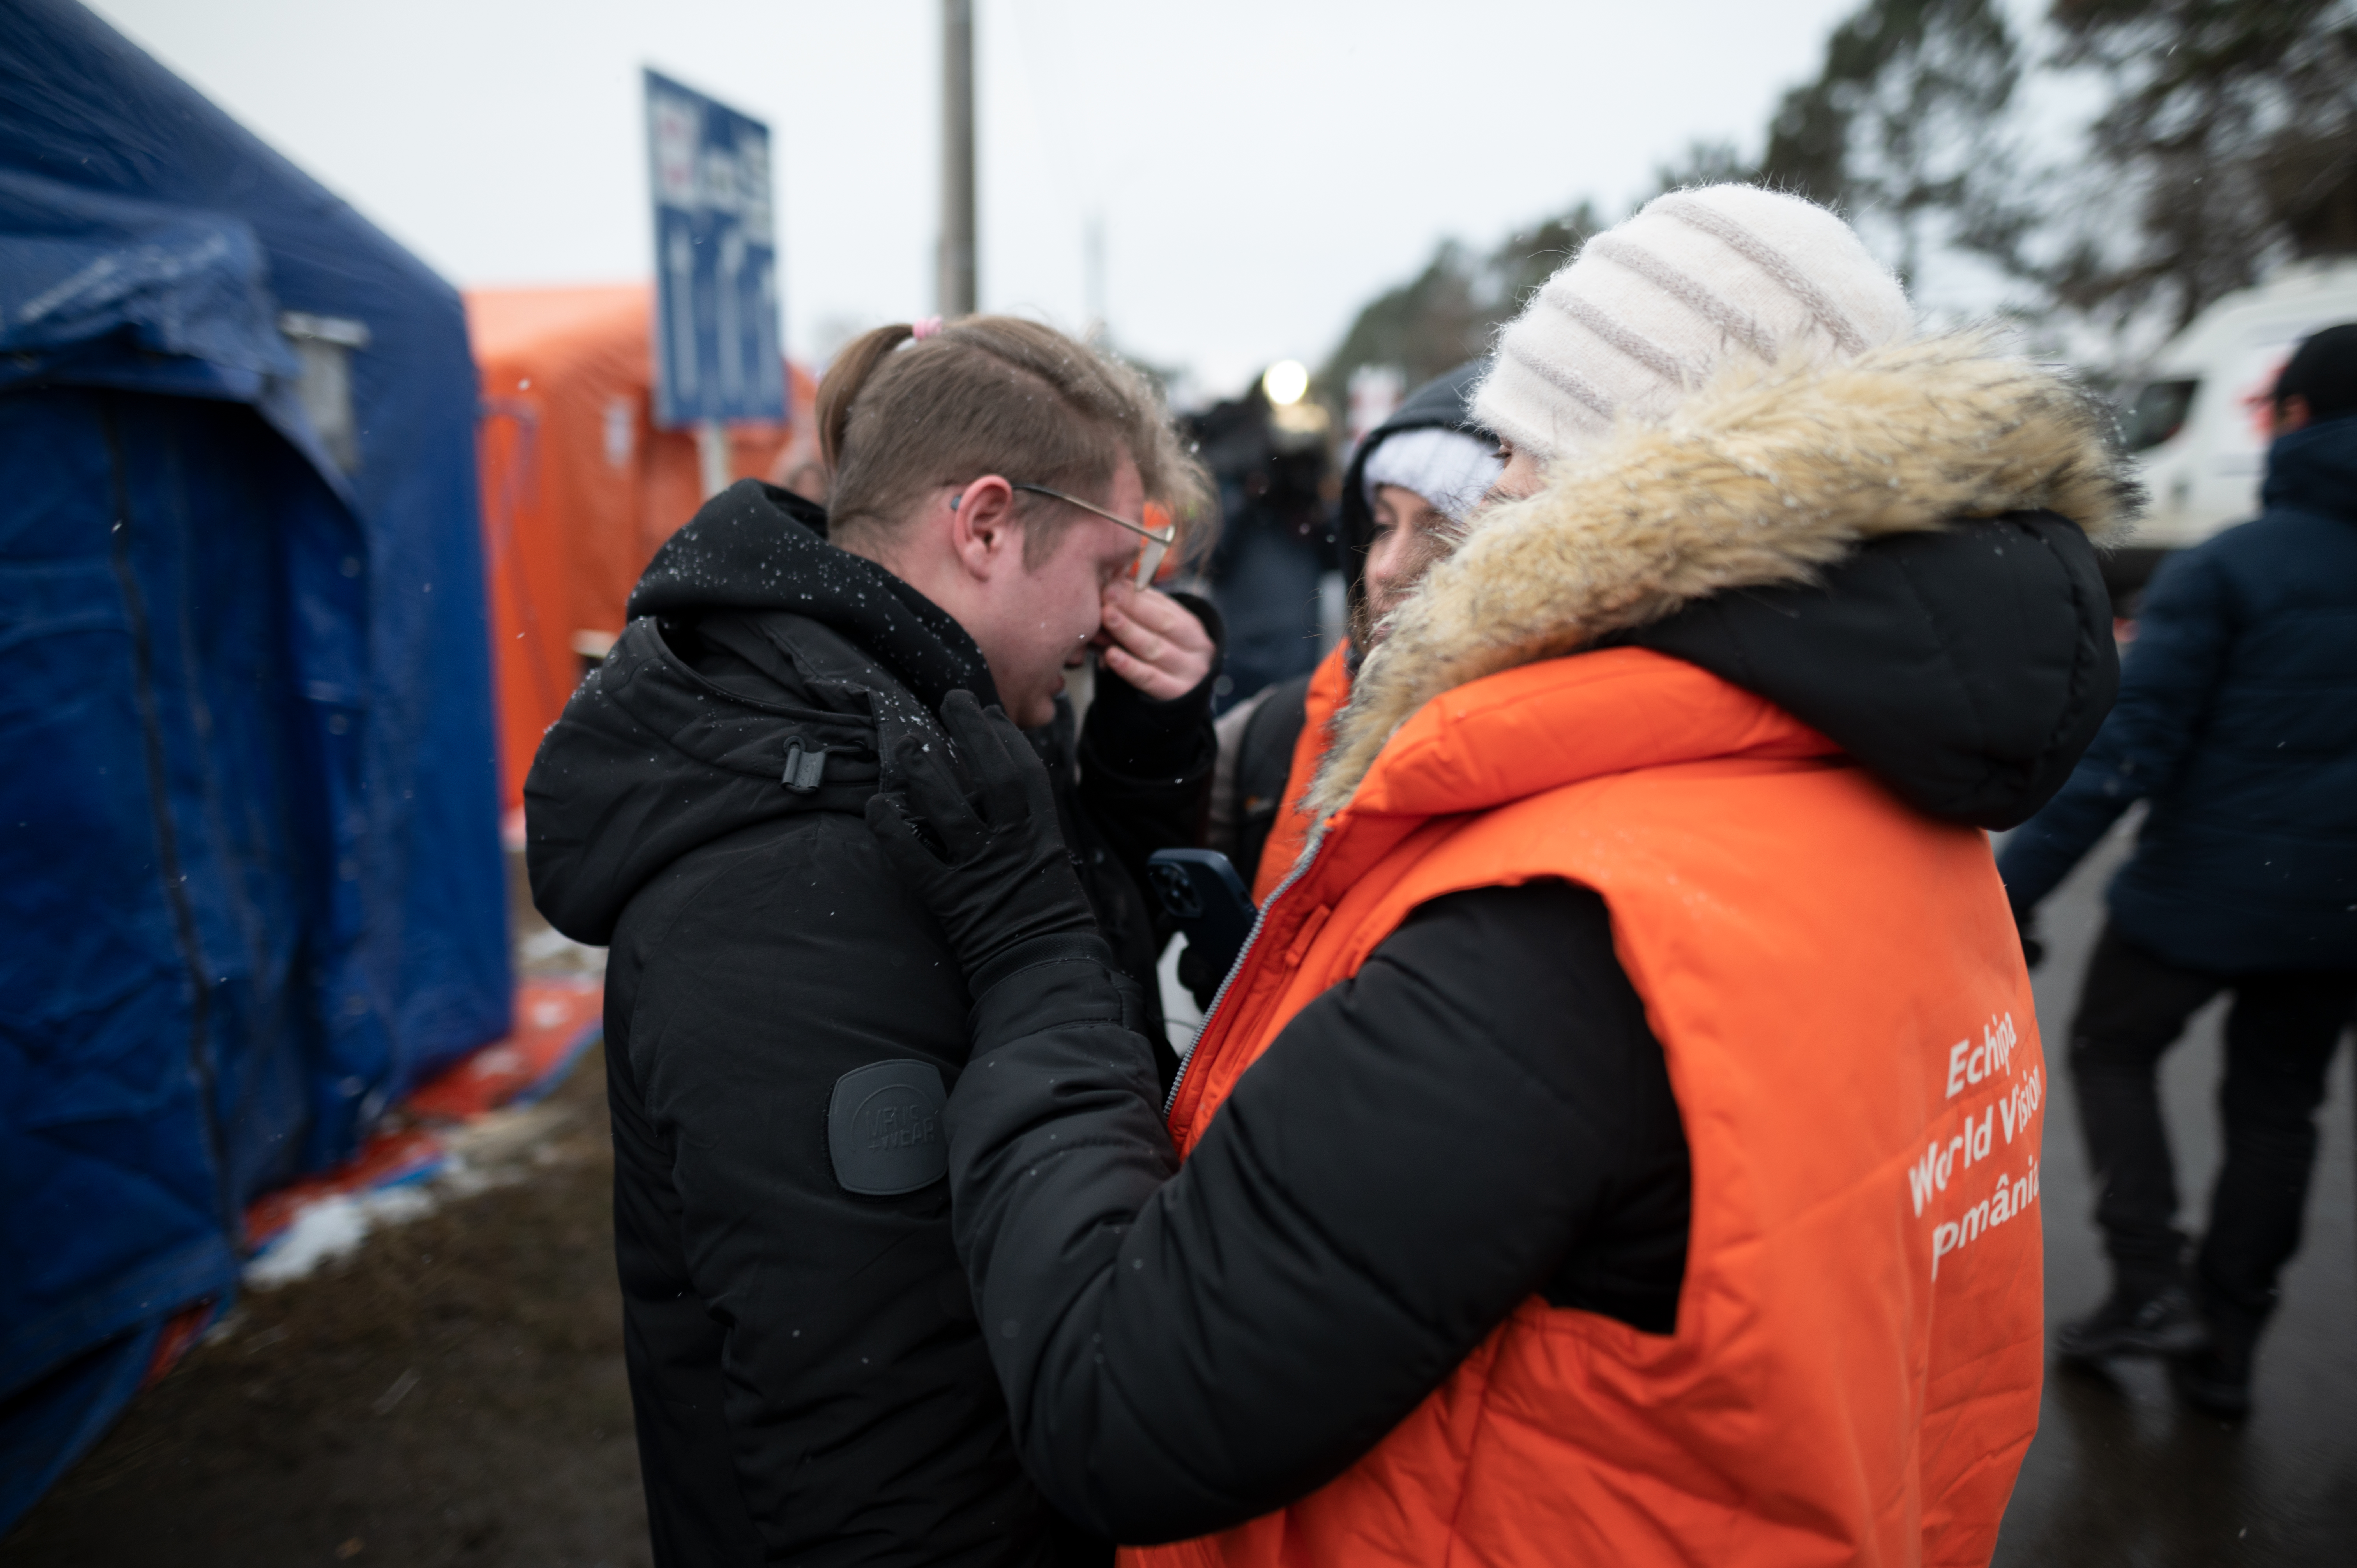 World Vision Staff speaking to Ivan, a refugee from Ukraine